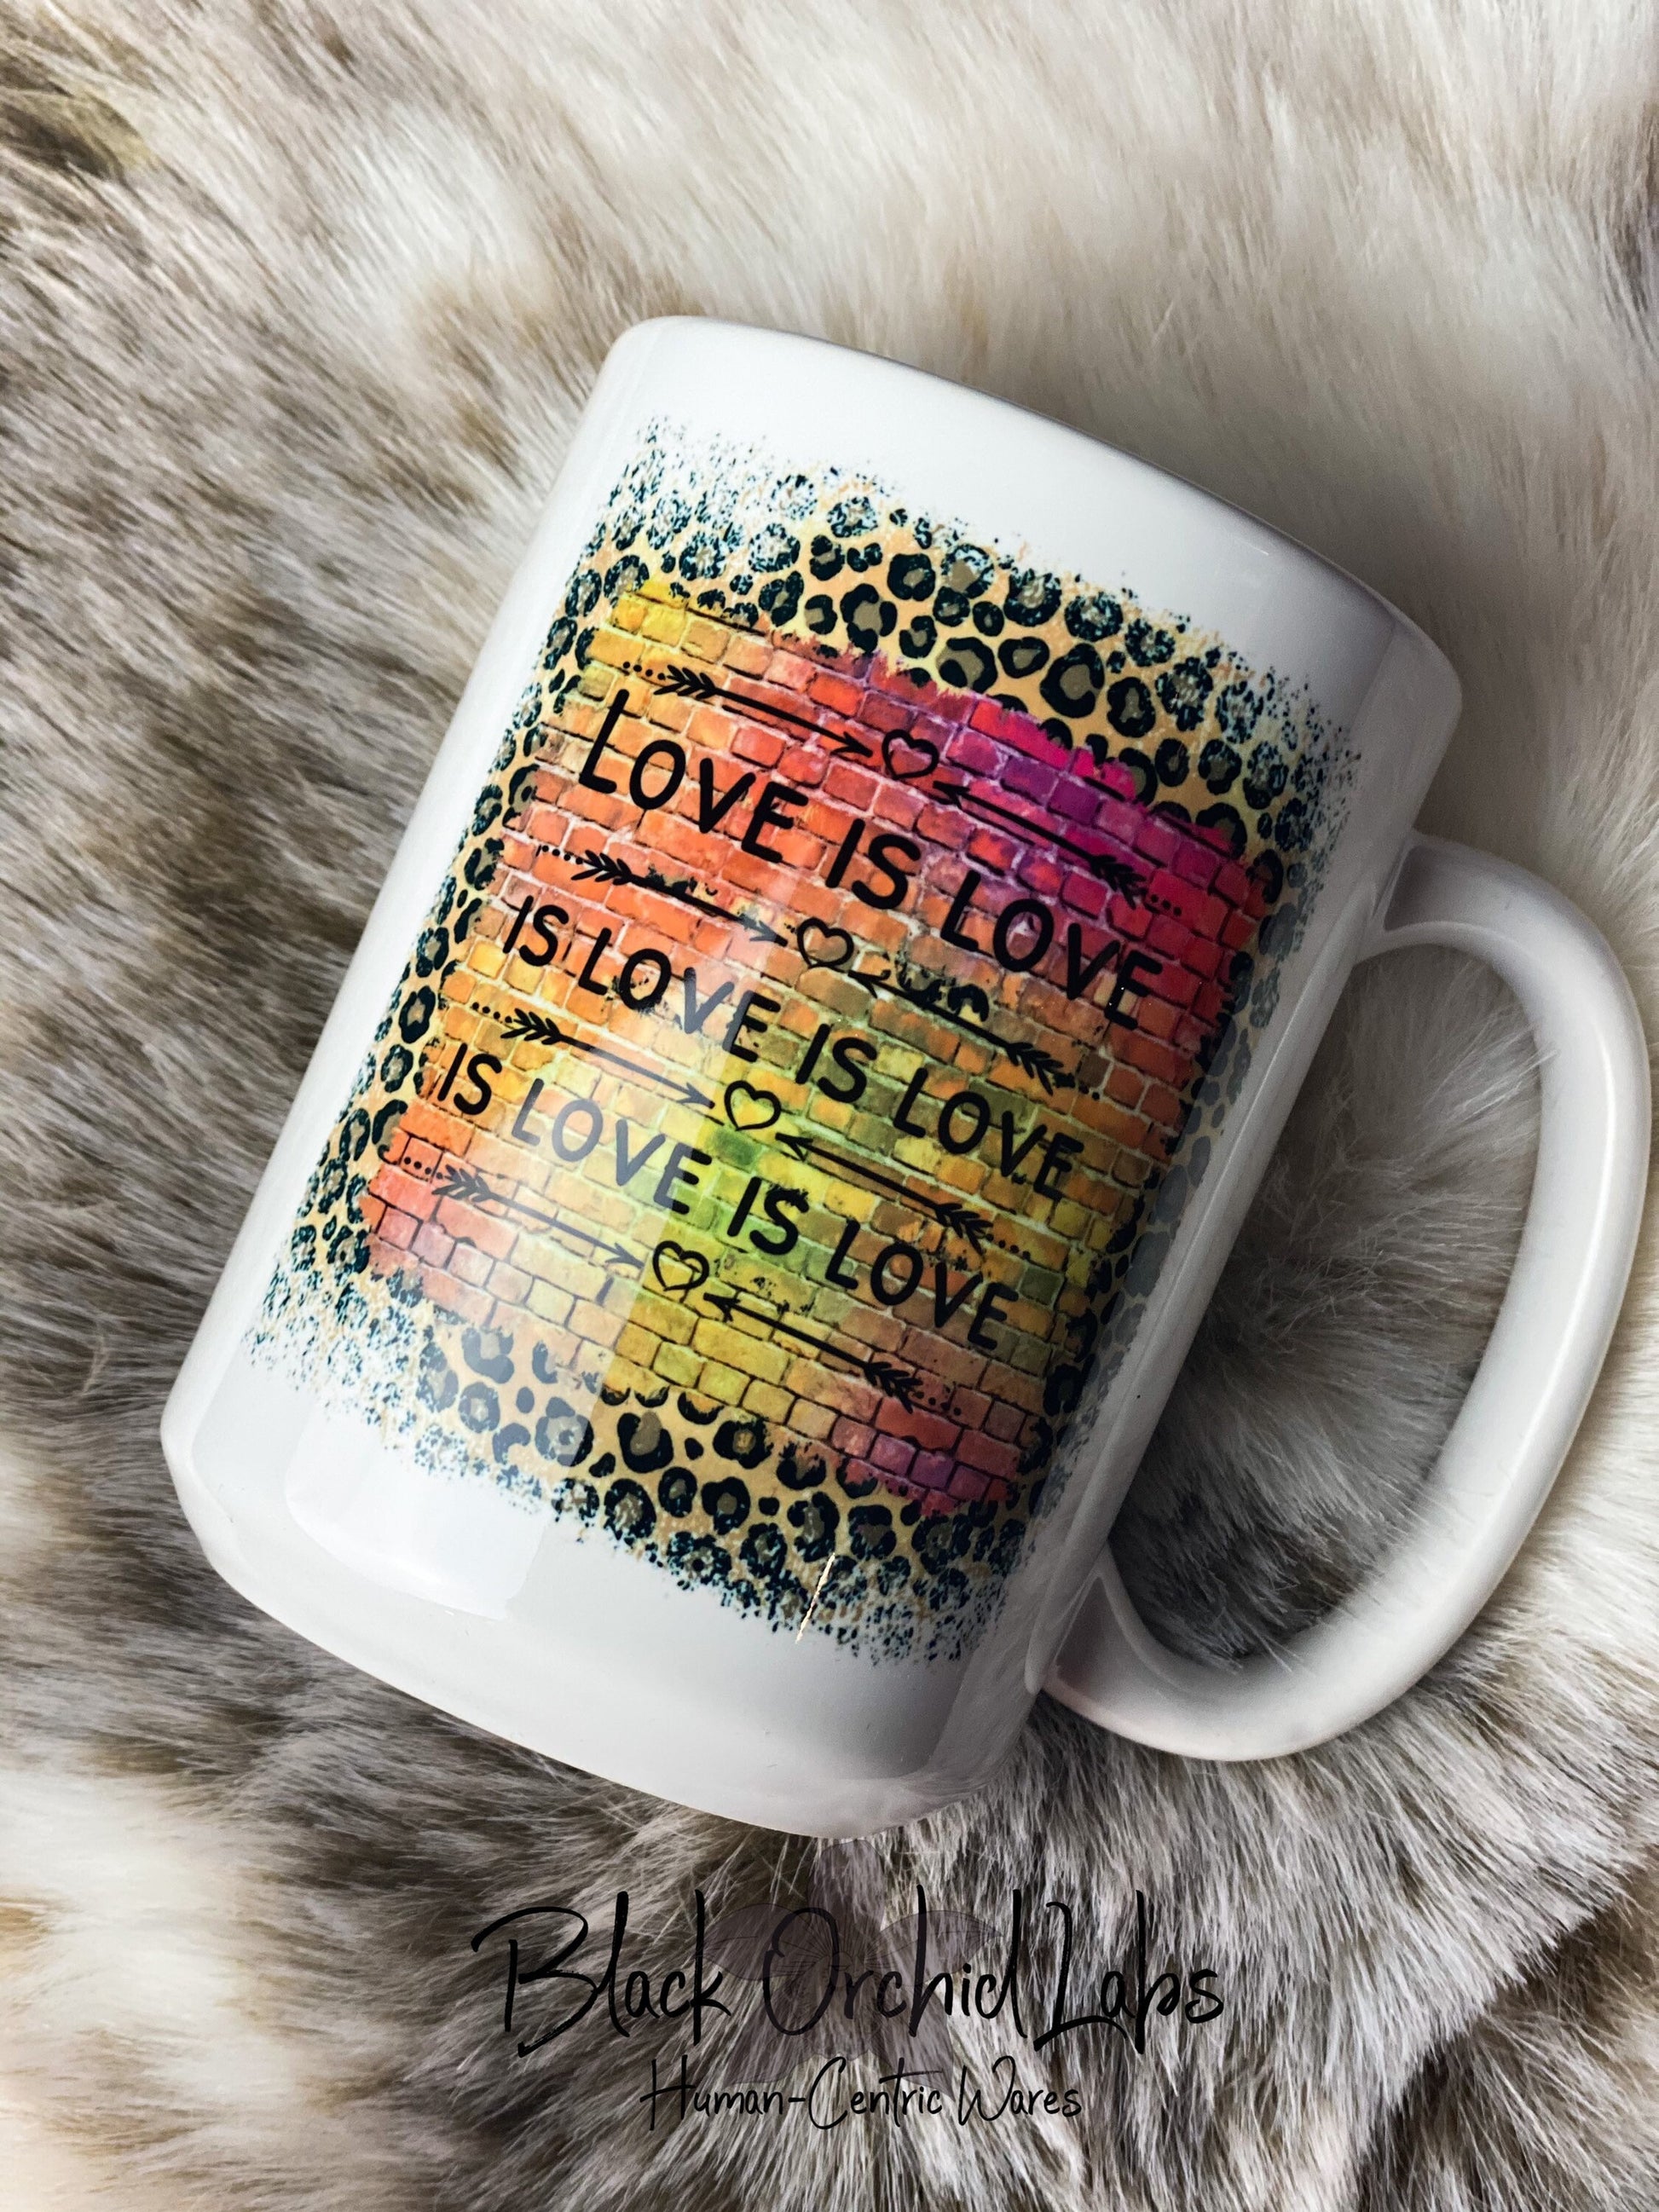 Love is Love Ceramic Coffee Mug, Humanity Coffee Cup, Equality